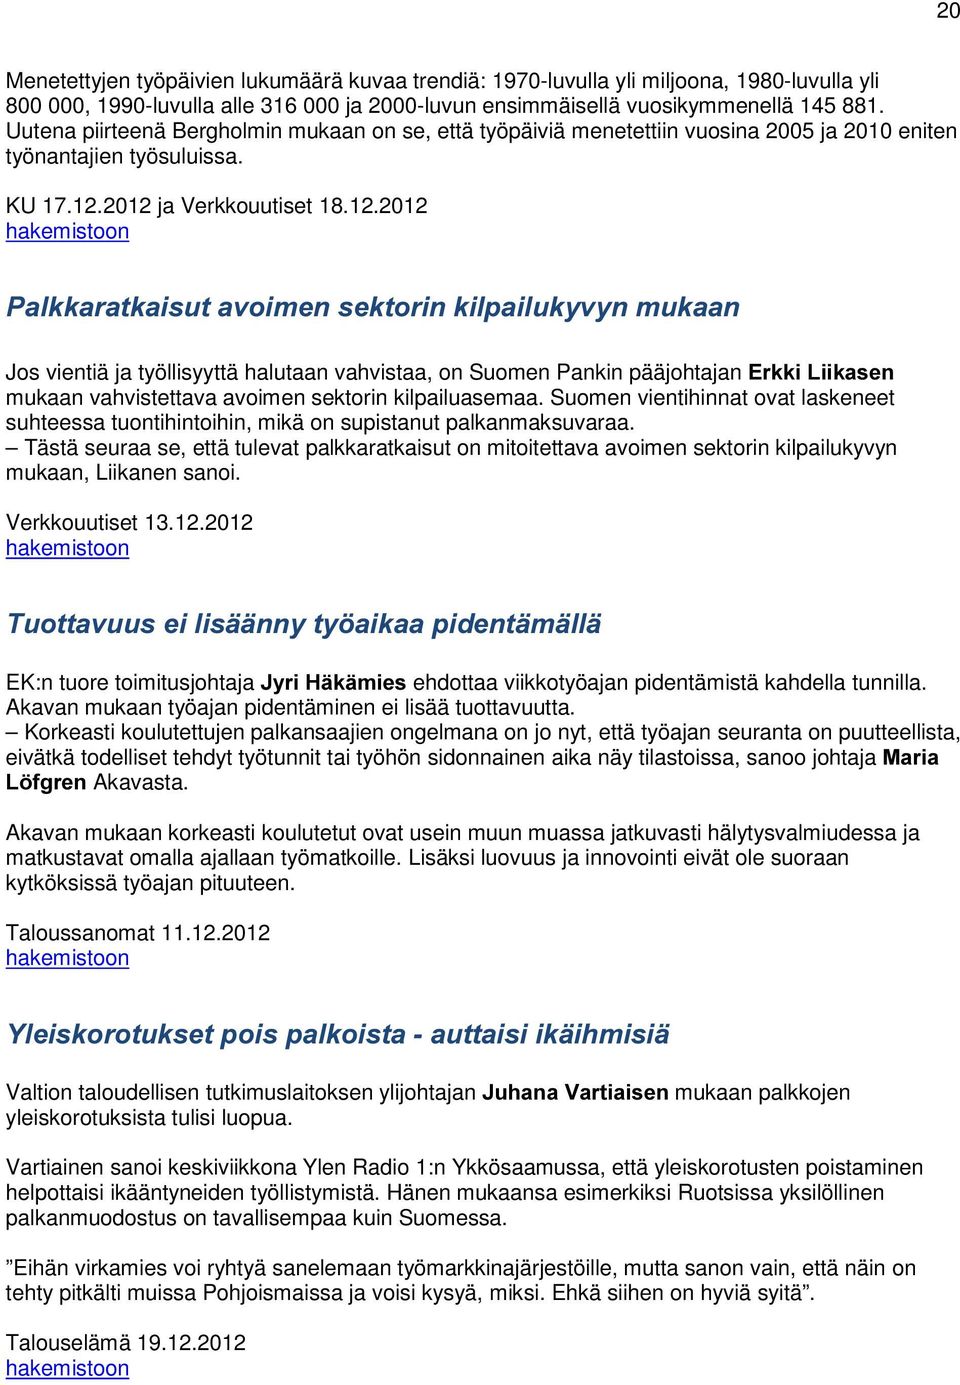 2012 ja Verkkouutiset 18.12.2012 3DONNDUDWNDLVXWDYRLPHQVHNWRULQNLOSDLOXN\Y\QPXNDDQ Jos vientiä ja työllisyyttä halutaan vahvistaa, on Suomen Pankin pääjohtajan (UNNL/LLNDVHQ mukaan vahvistettava